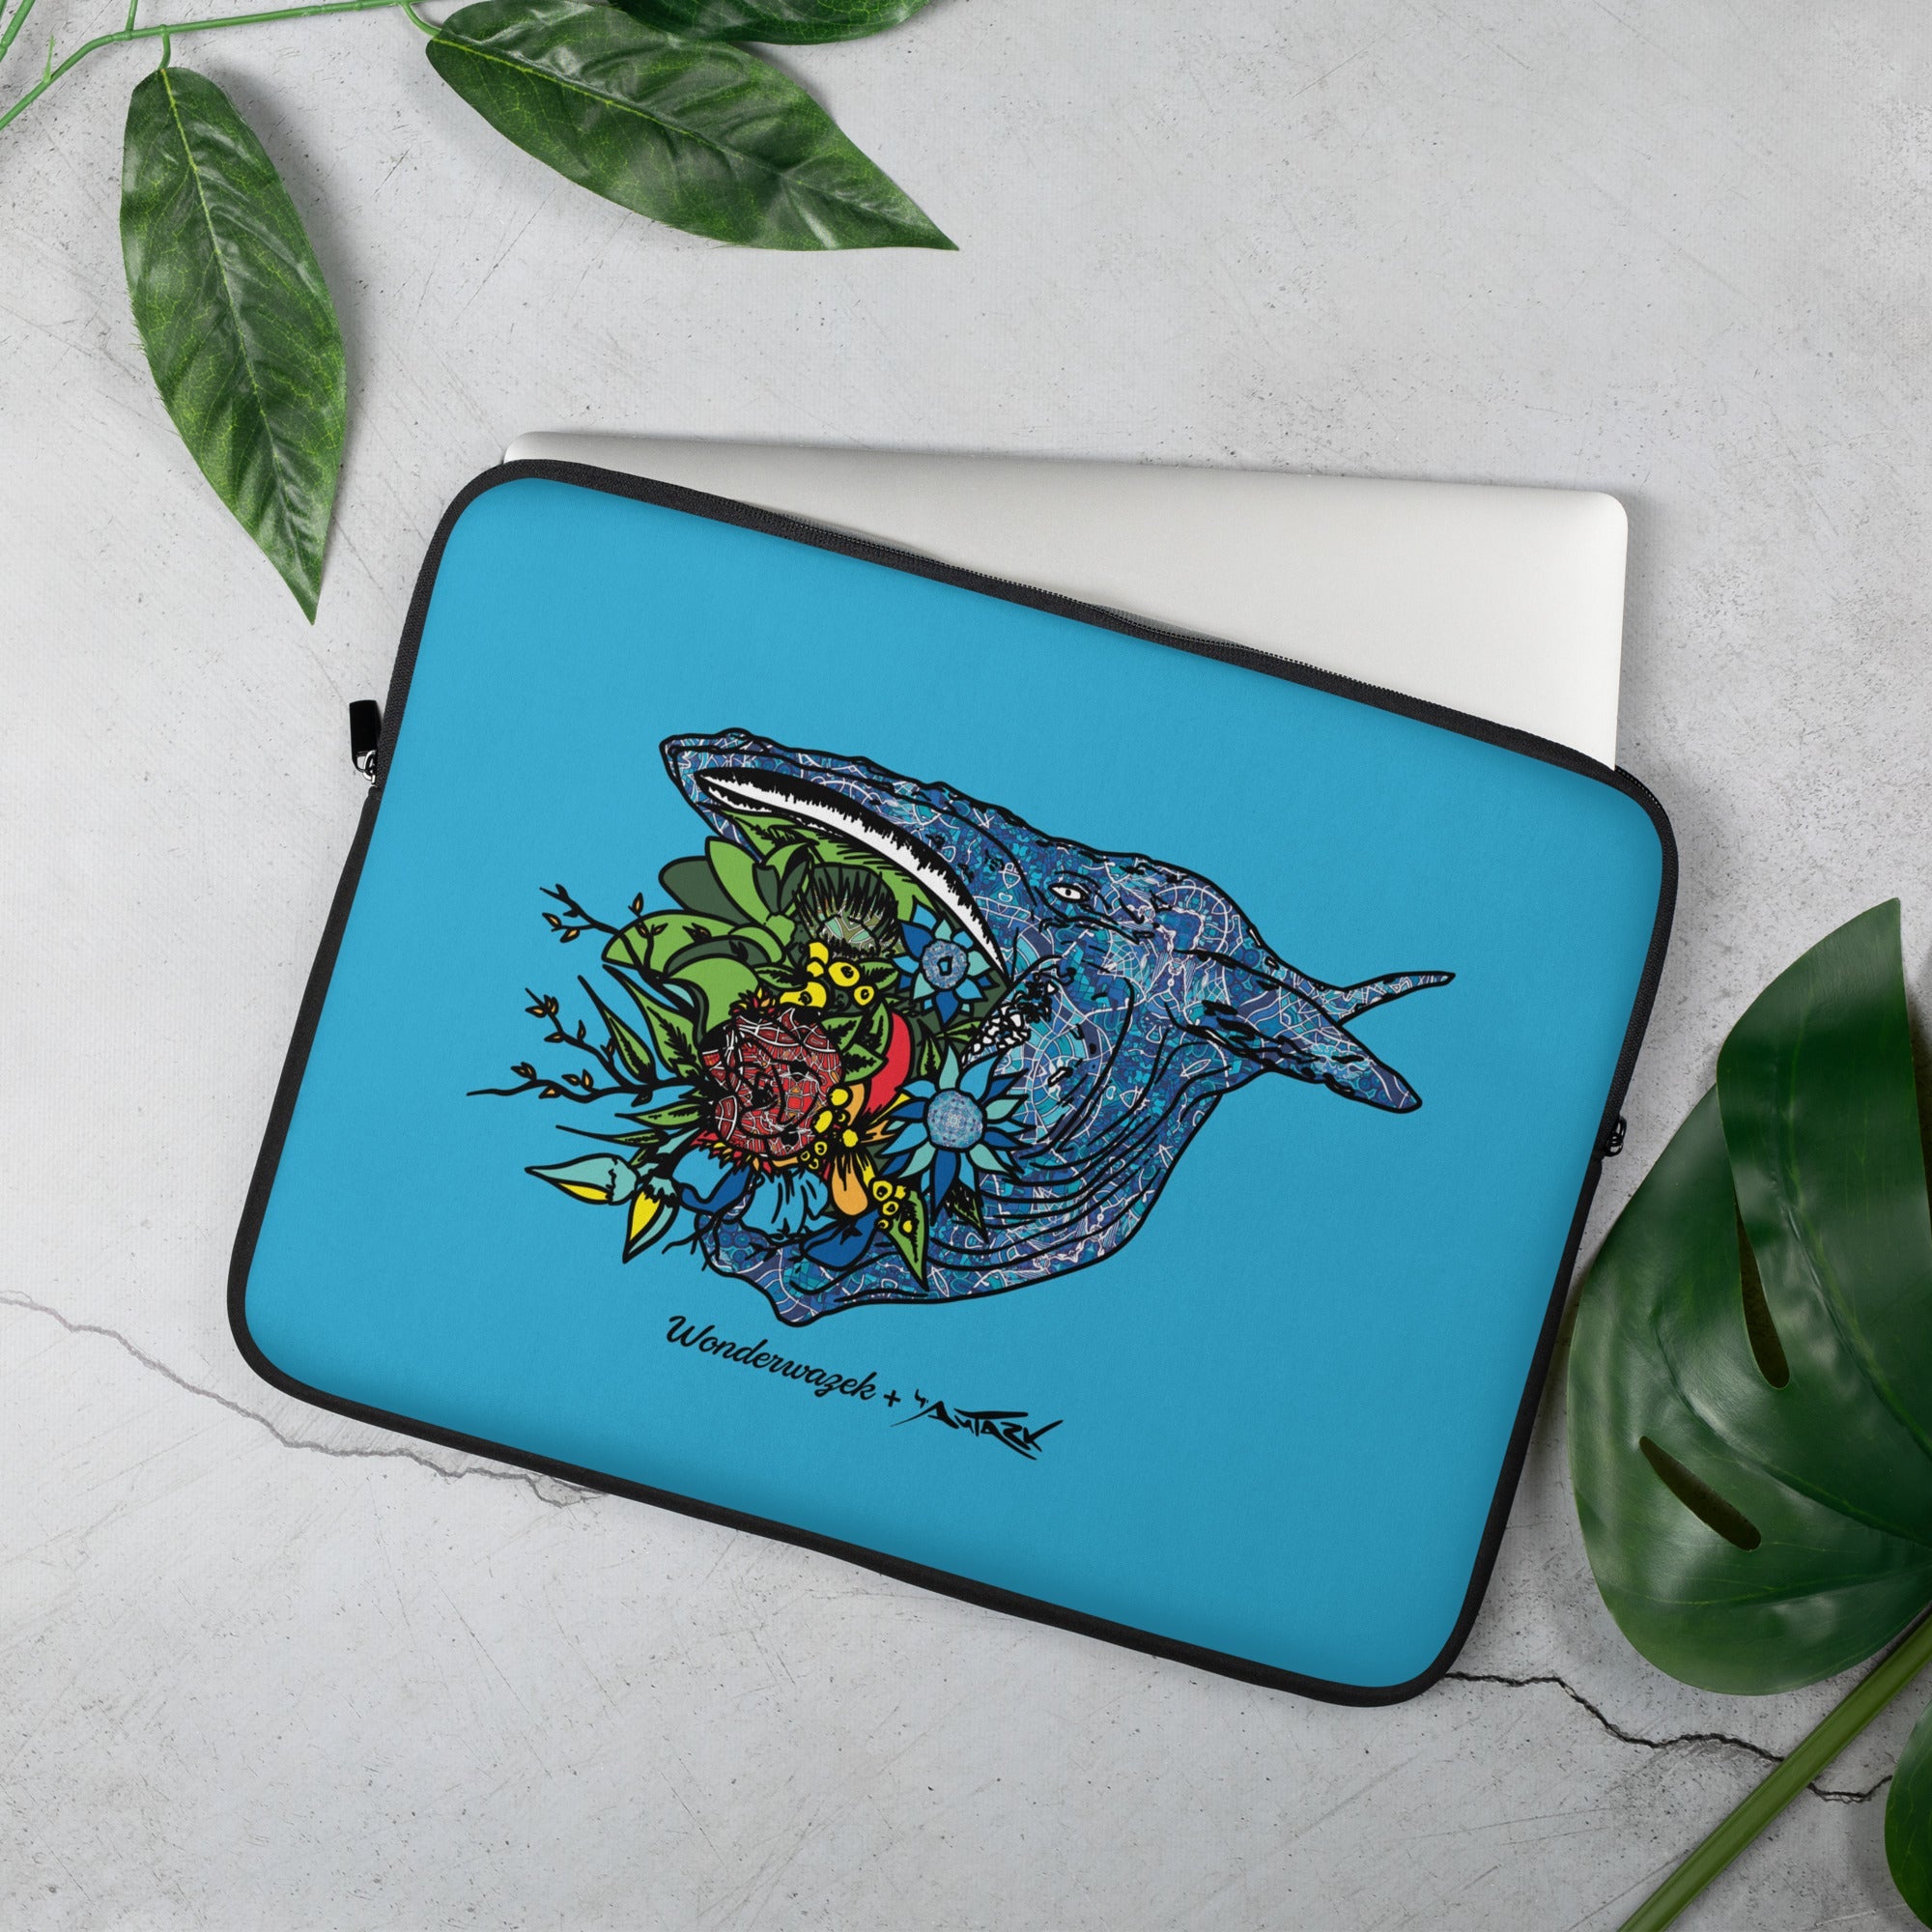 Laptoptasche • Edition Tierschutz – Blumenwal - Wonderwazek